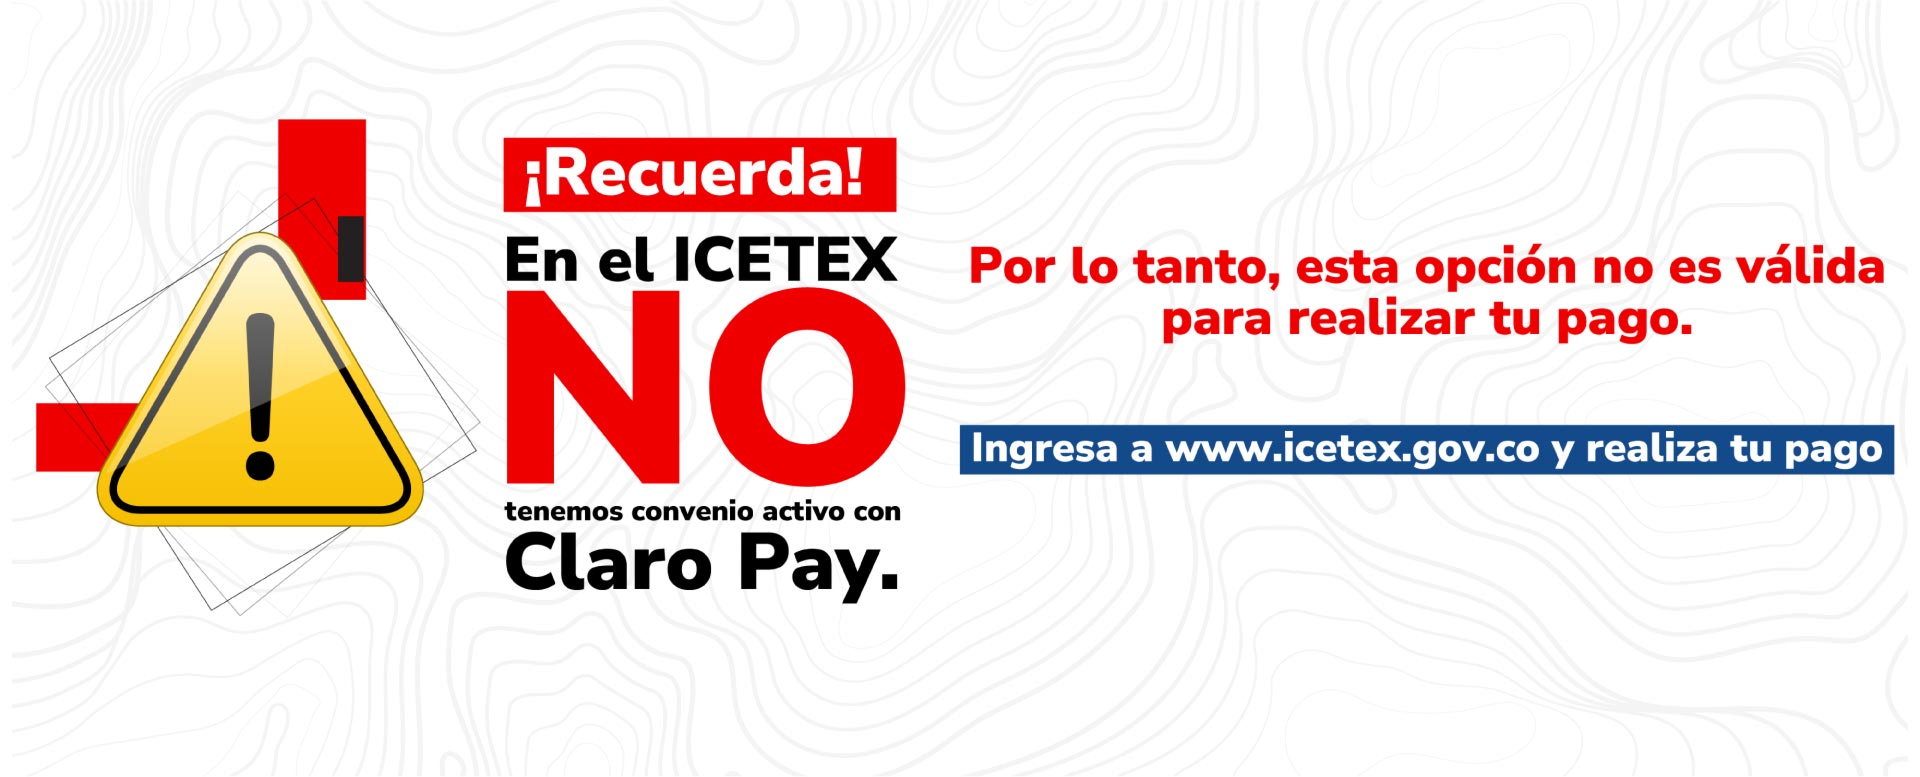 ¡Recuerda! En el ICETEX no tenemos convenio activo con Claro Pay.